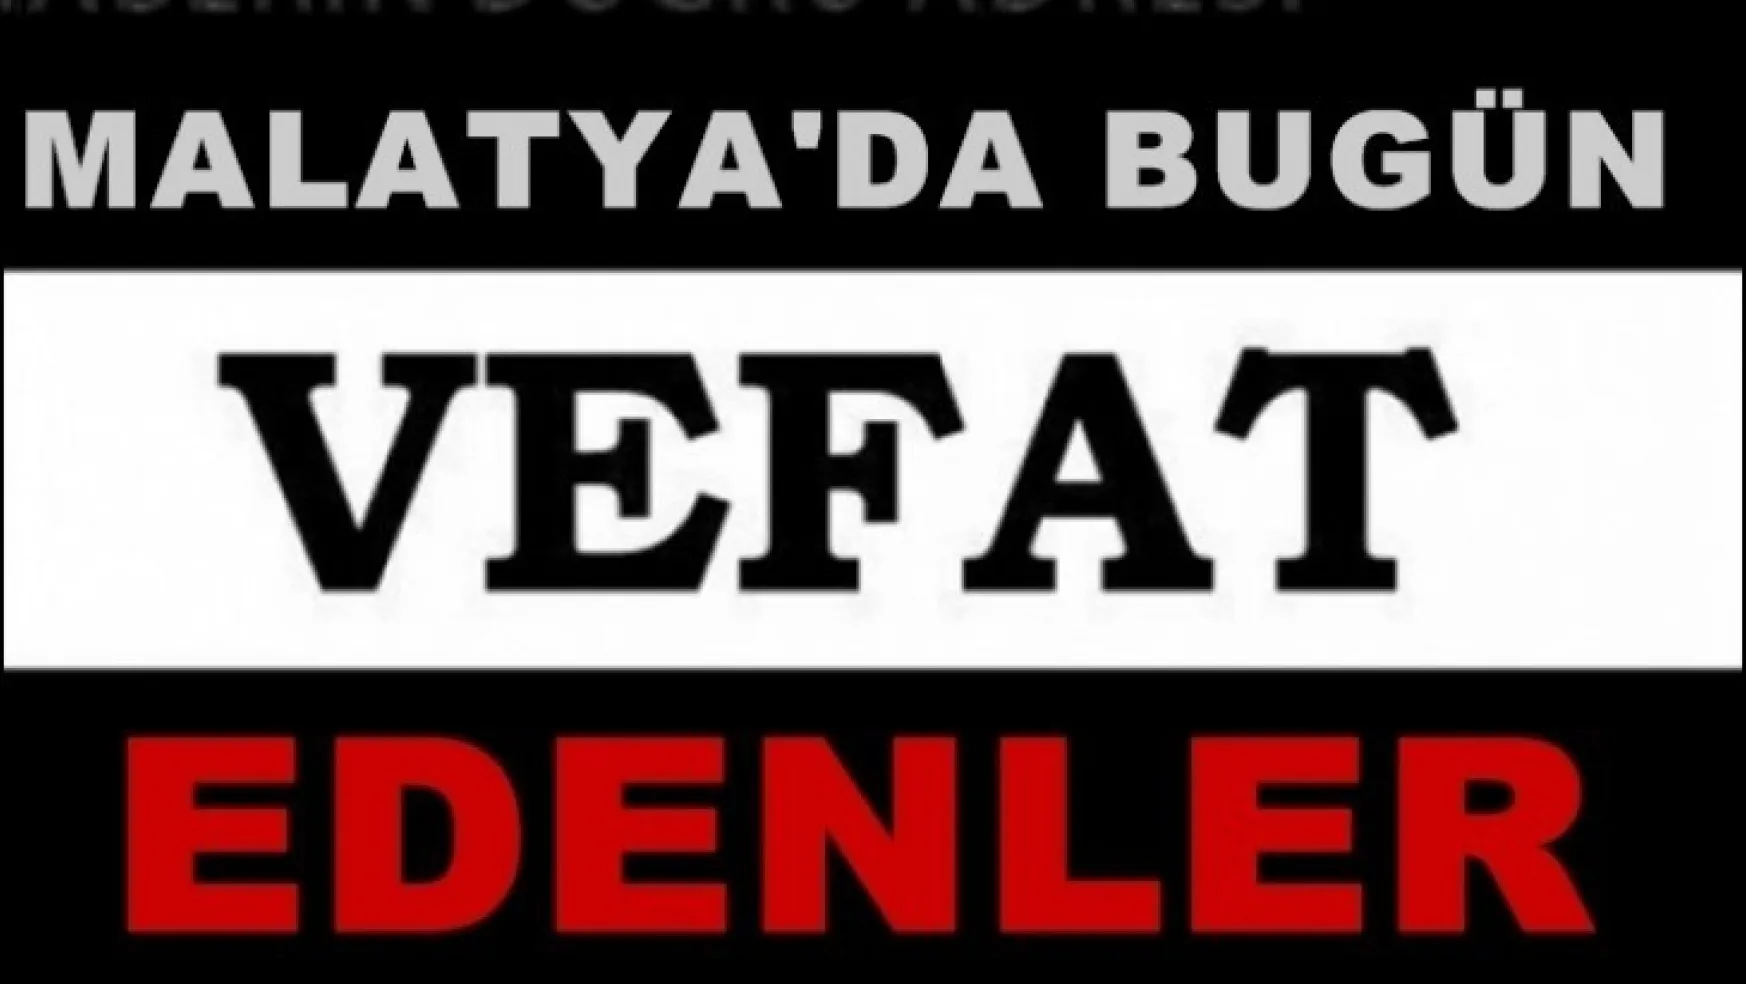 Malatya'da Bugün 10 Kişi Vefat Etti